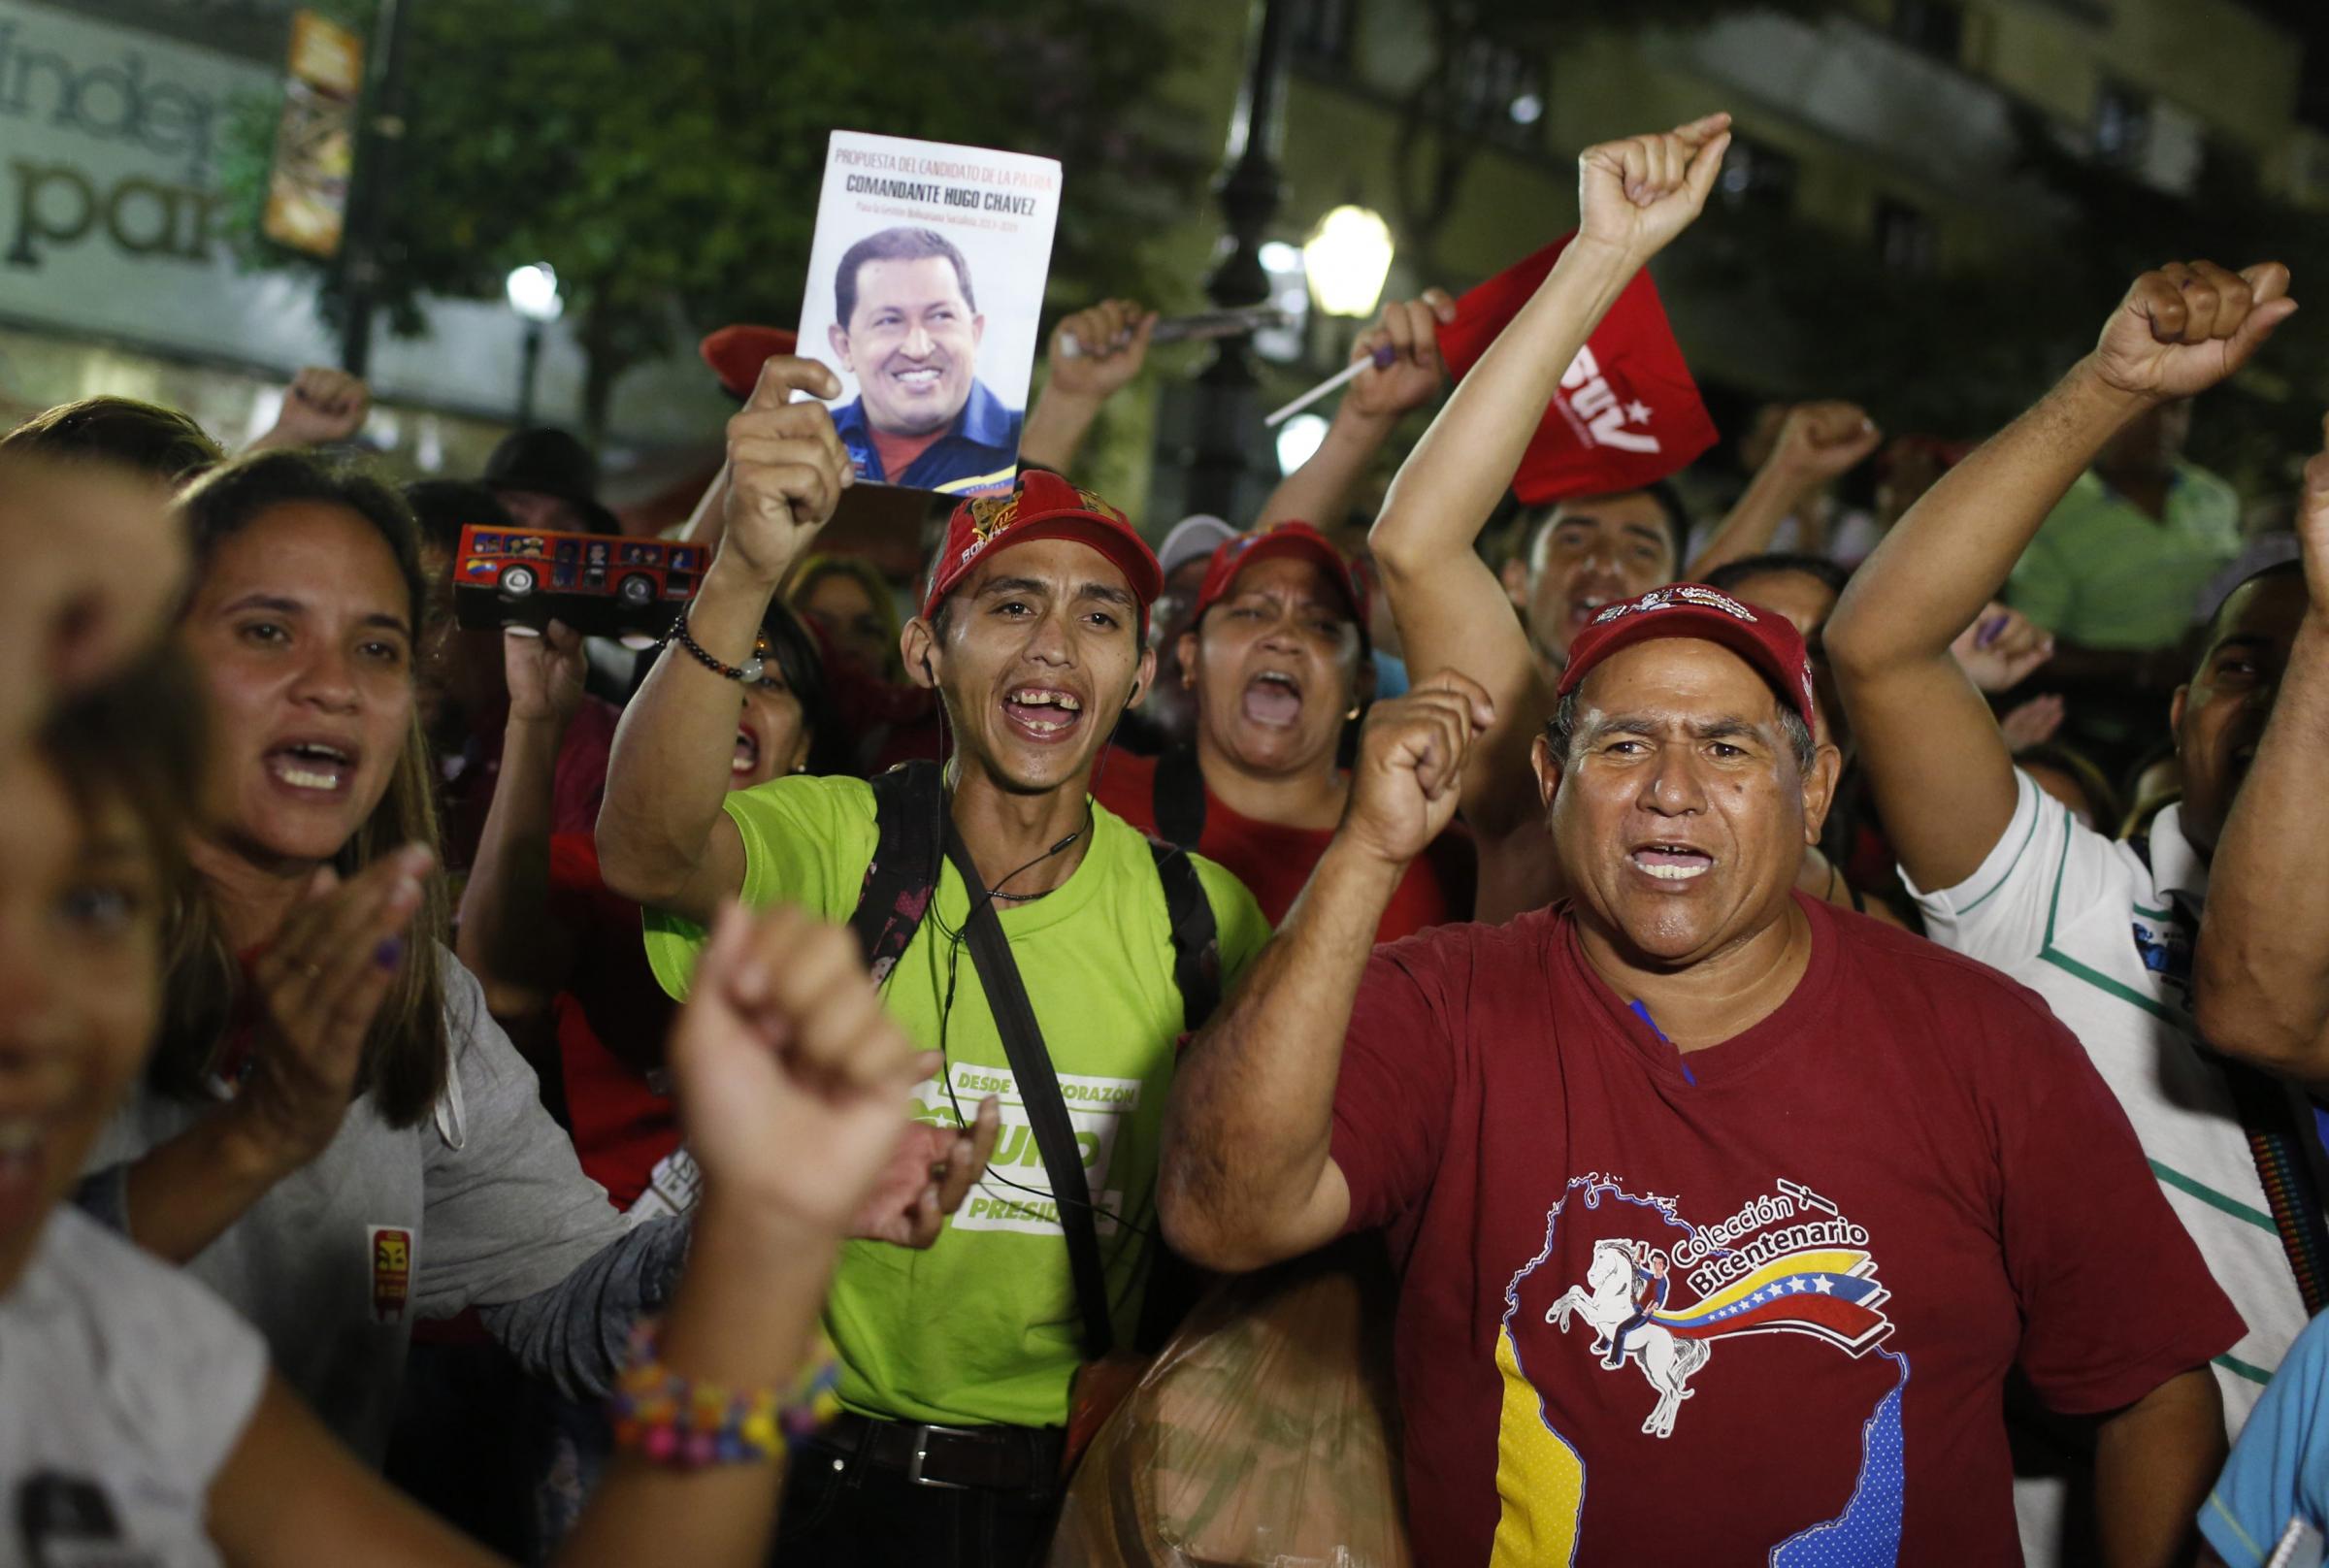 委内瑞拉选后局势动荡7人死亡 马杜罗谴责美国